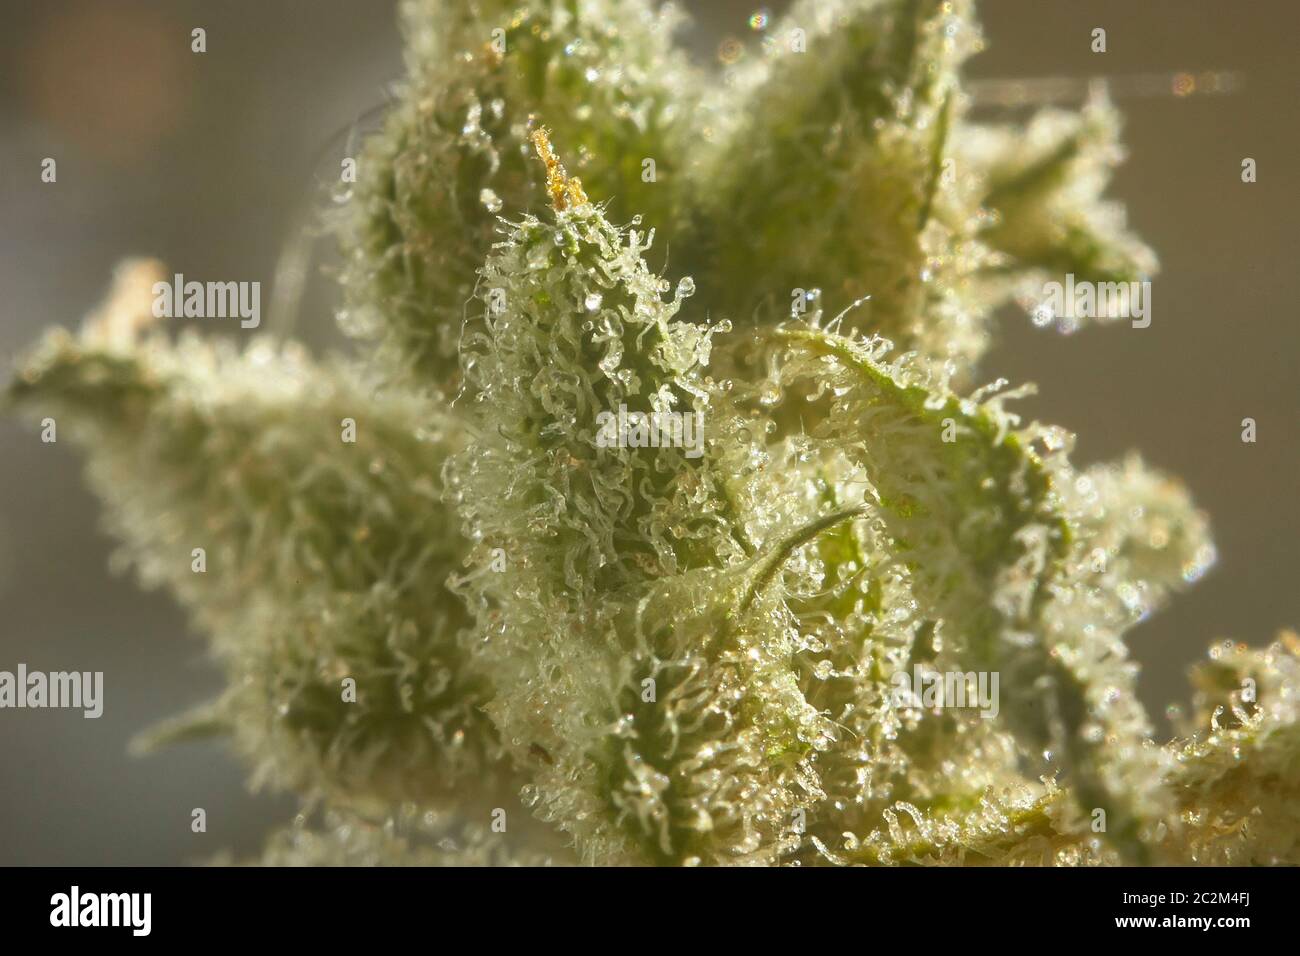 Infiorescenza di marijuana con un livello molto alto di allargamento dove è possibile vedere i cristalli di resina prodotta nella sua fase di fioritura. Foto Stock